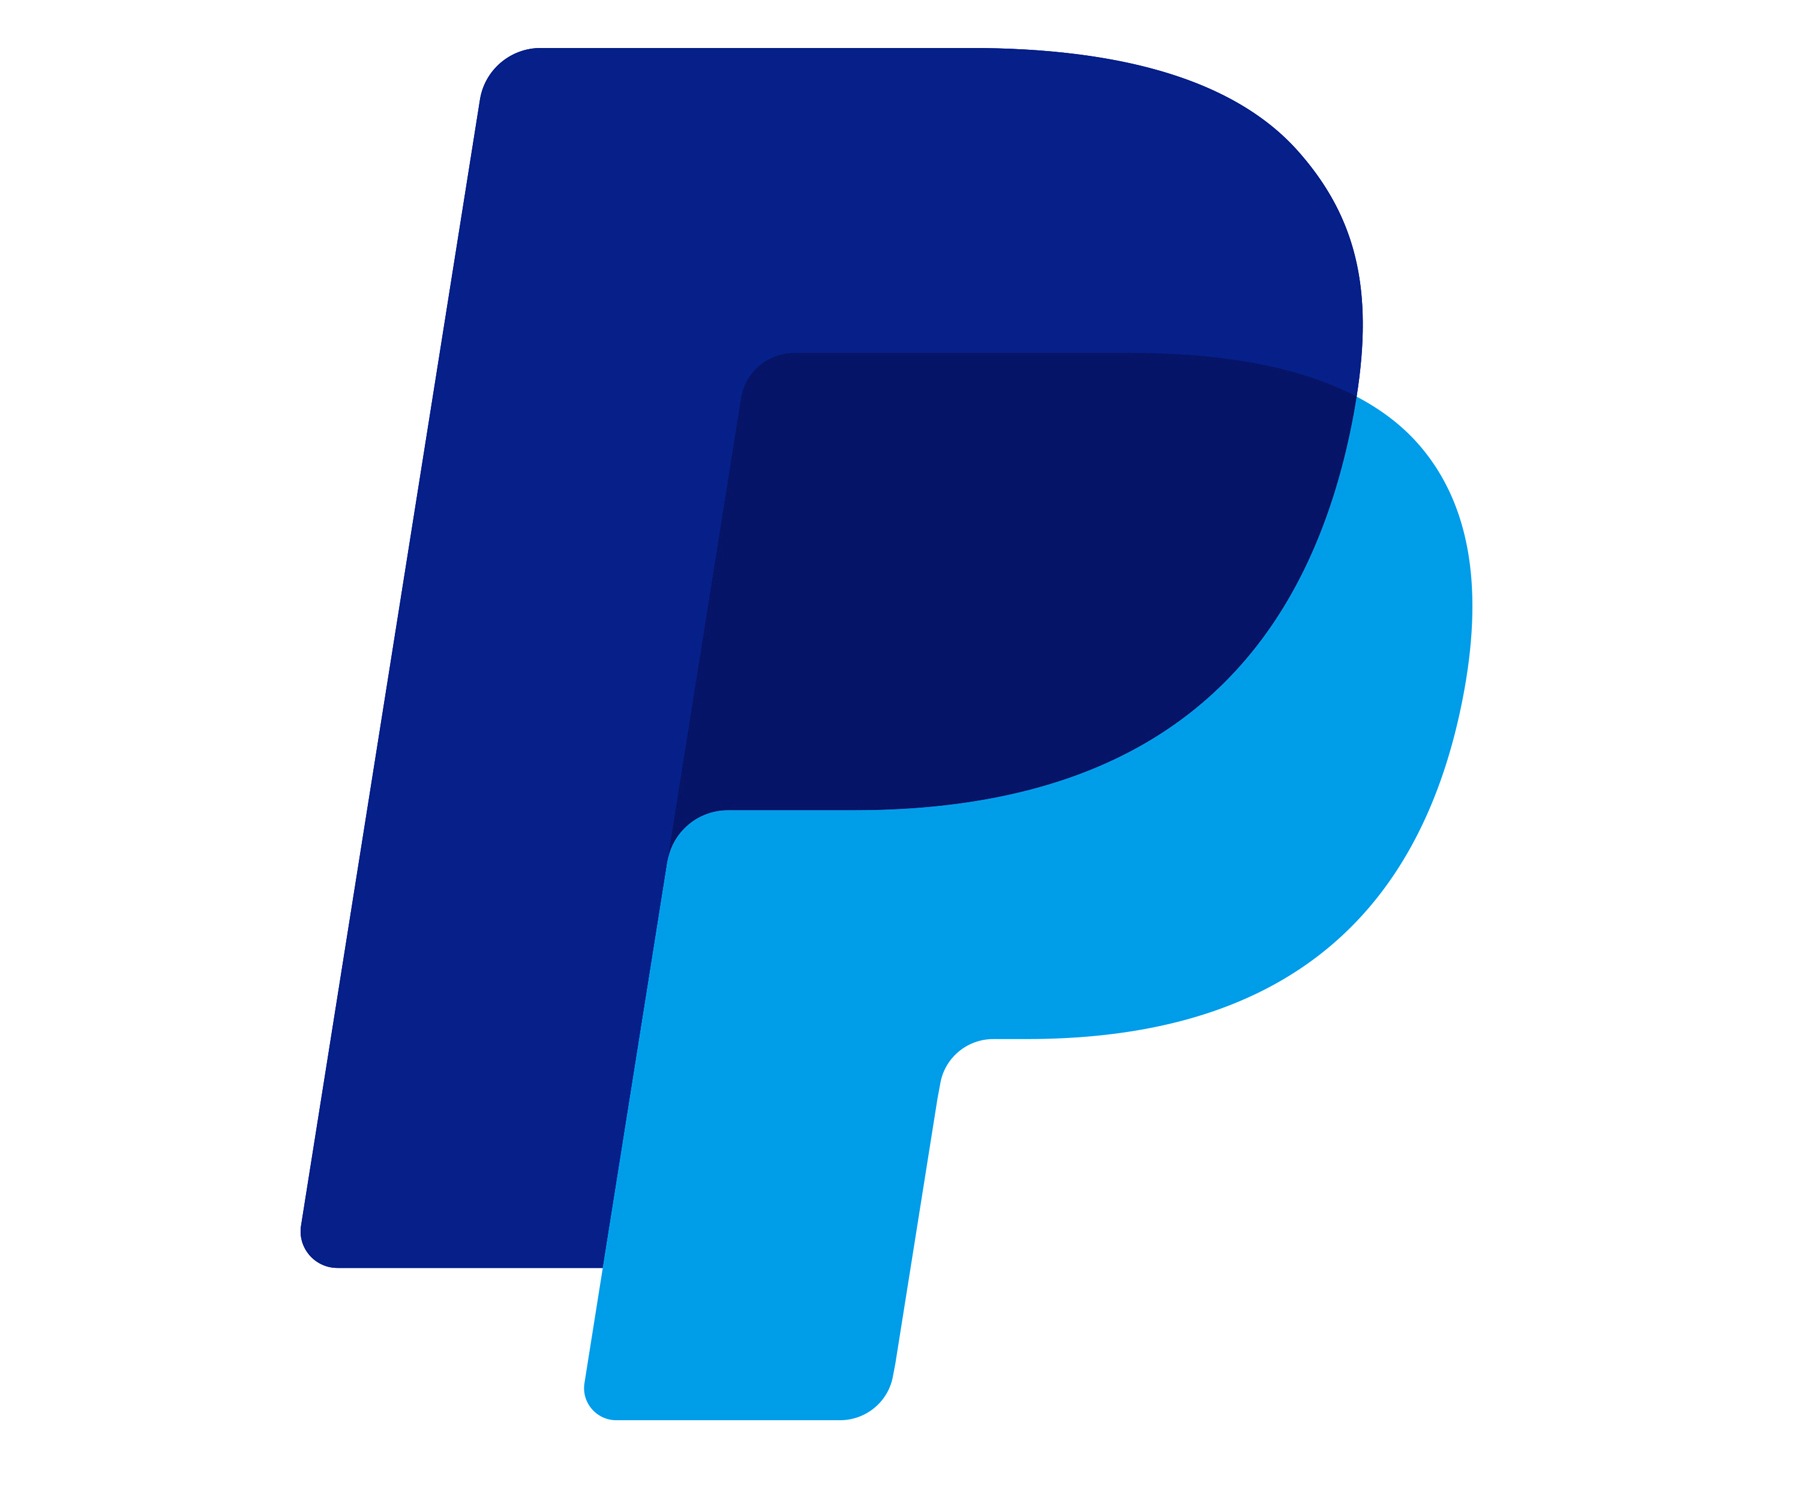 PayPal logo histoire et signification, evolution, symbole PayPal